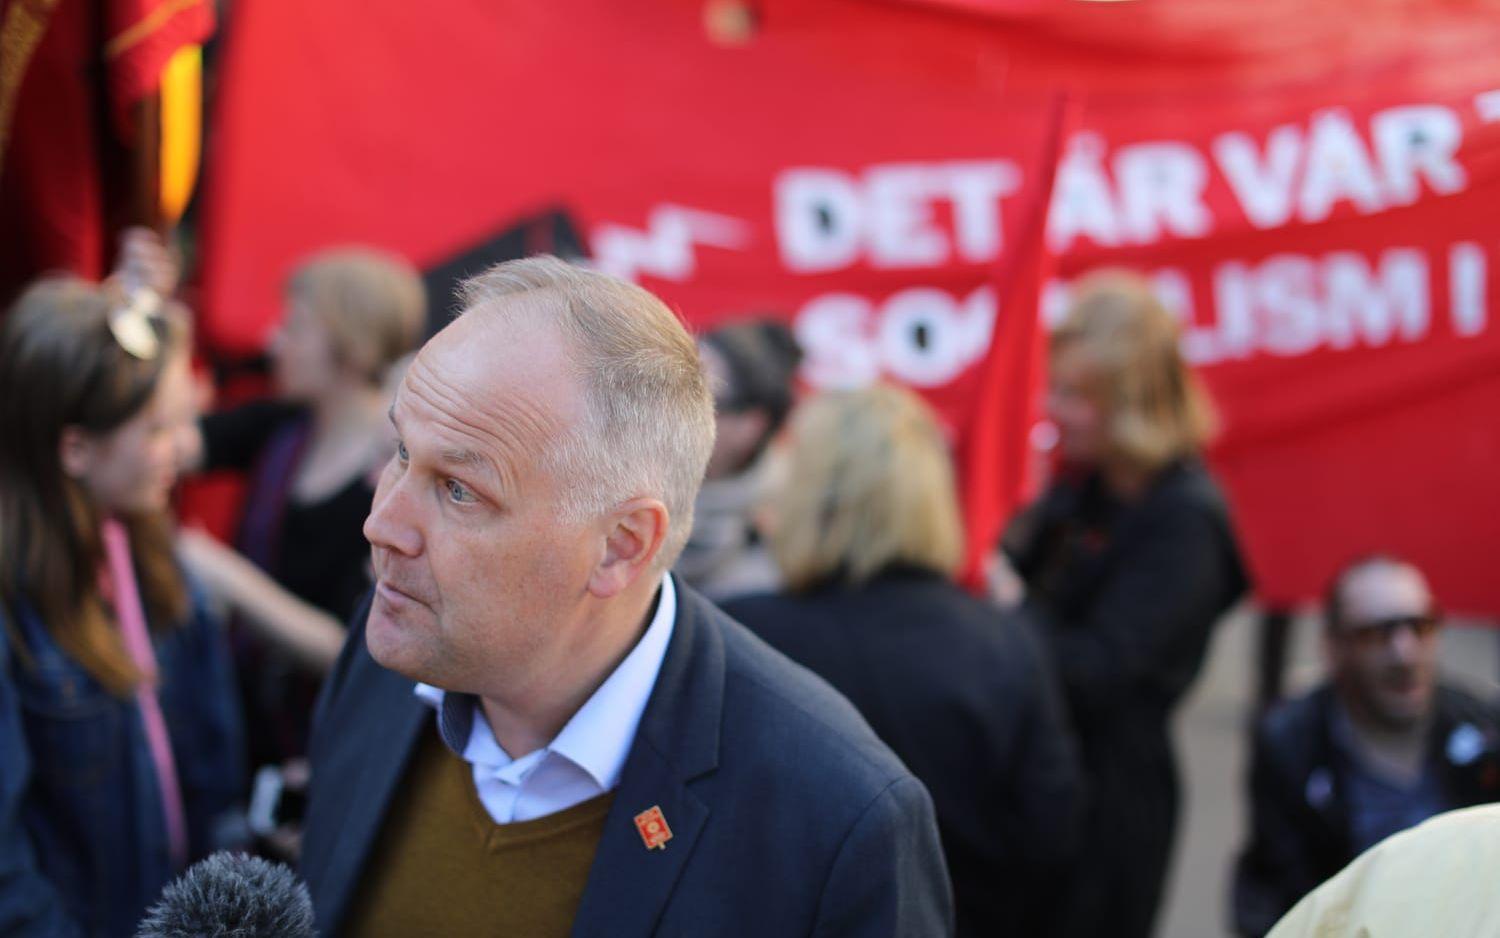 Vänsterpartiet är tillsammans med Sverigedemokraterna och Centerpartiet ett av de partier som det går starkast för. Bild: TT
